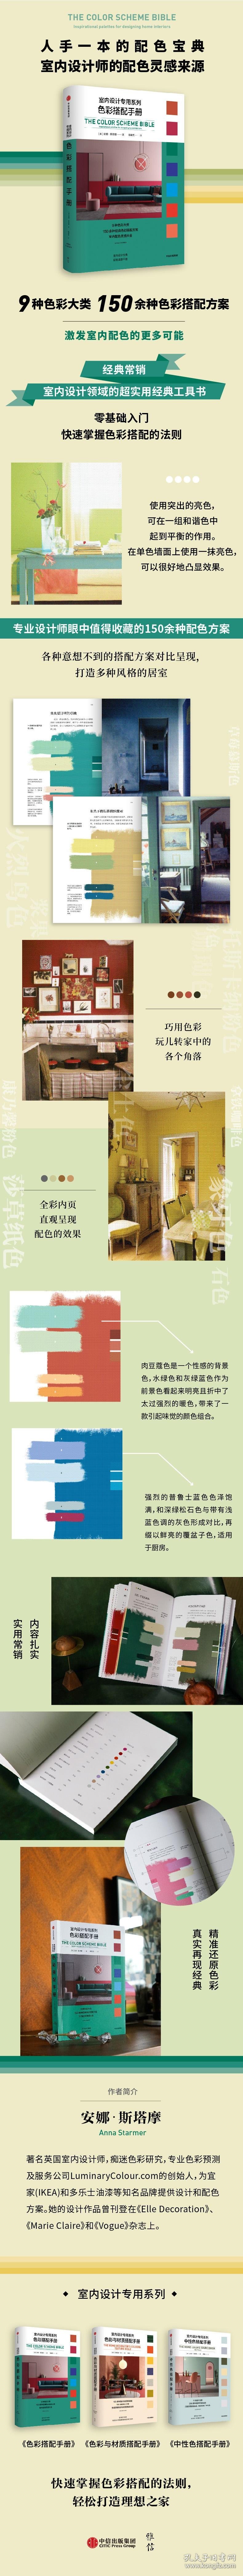 色彩搭配手册/室内设计专用系列 9787521723557 (英)安娜·斯塔摩 中信出版社